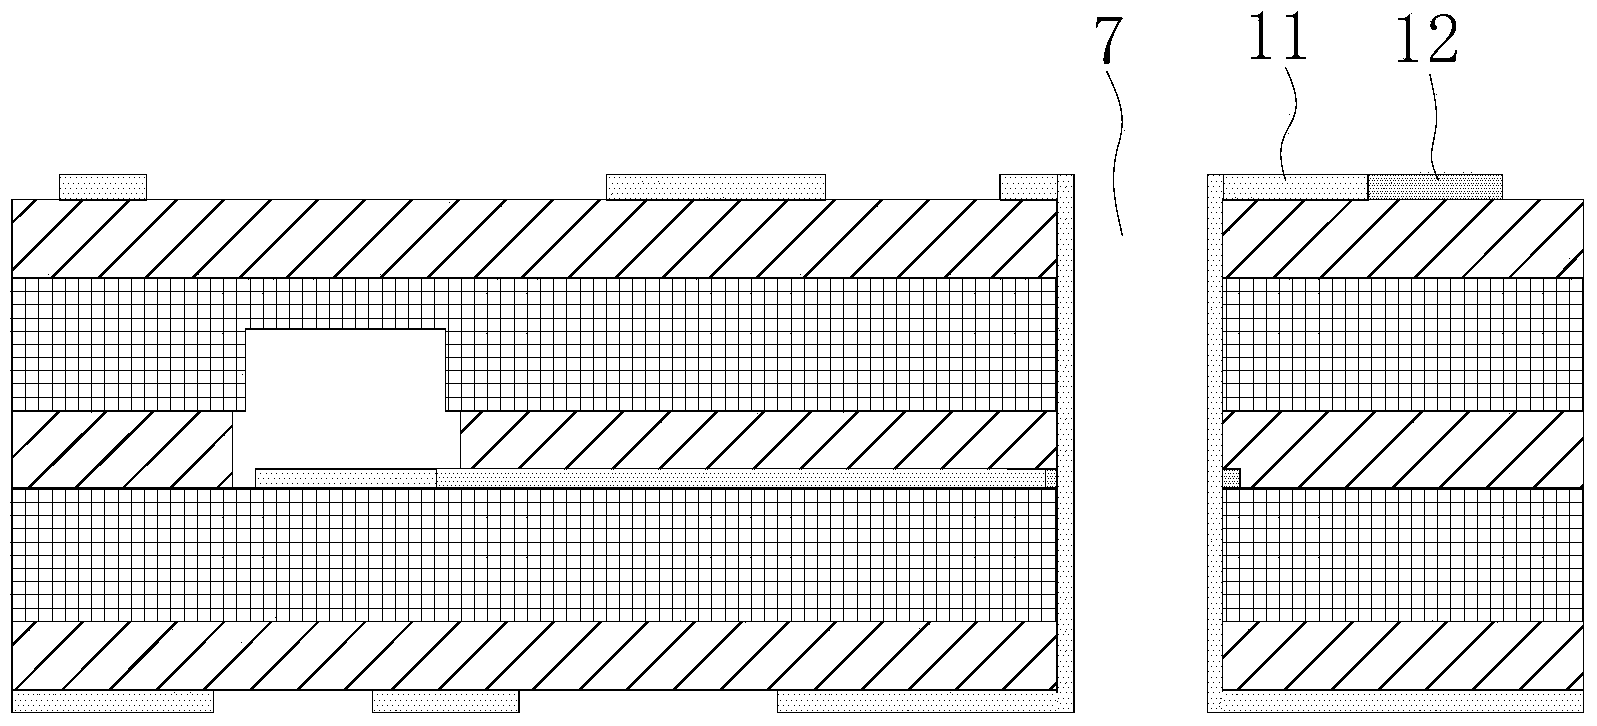 Method of forming deep blind groove in printed circuit board (PCB)